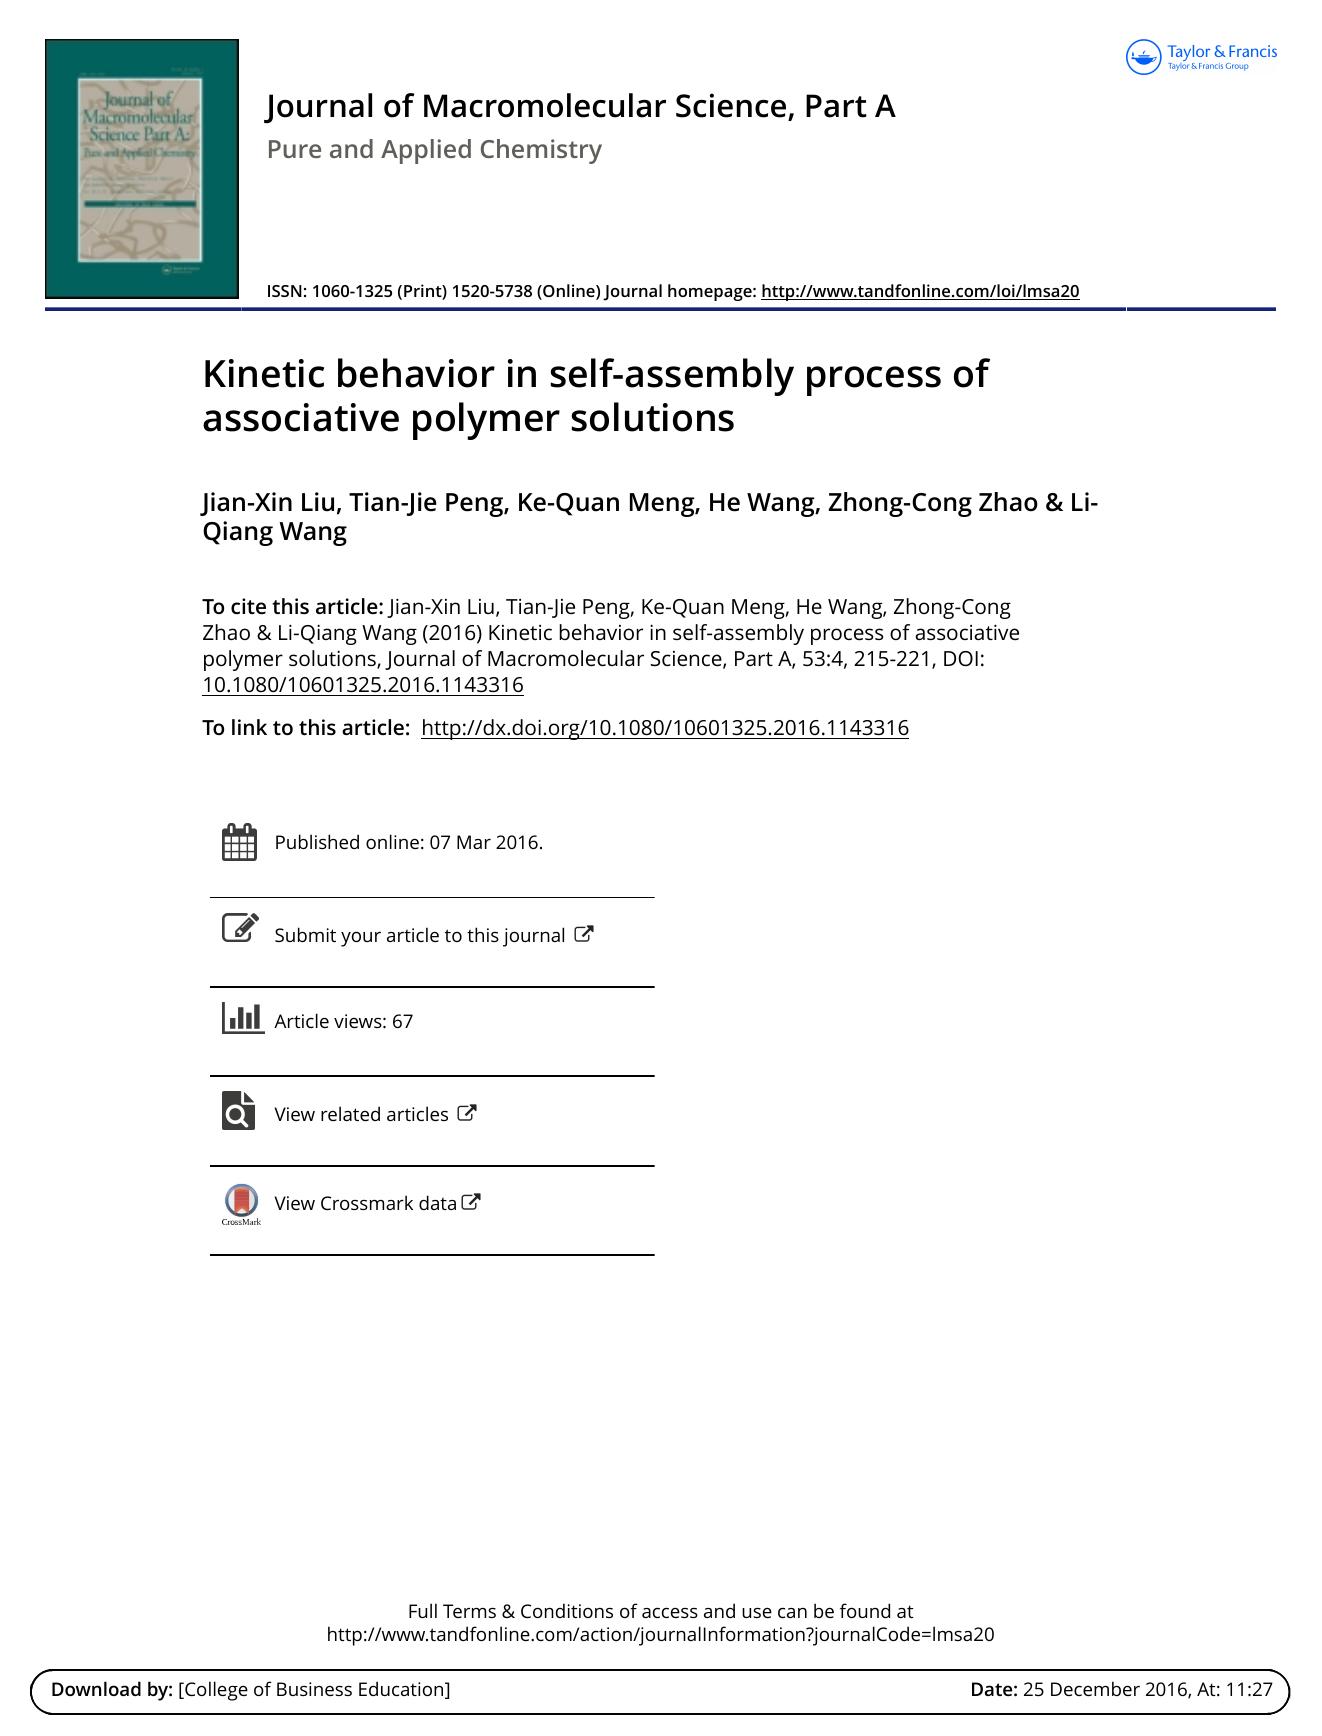 Kinetic behavior in self-assembly process of associative polymer solutions by Jian-Xin Liu & Tian-Jie Peng & Ke-Quan Meng & He Wang & Zhong-Cong Zhao & Li-Qiang Wang